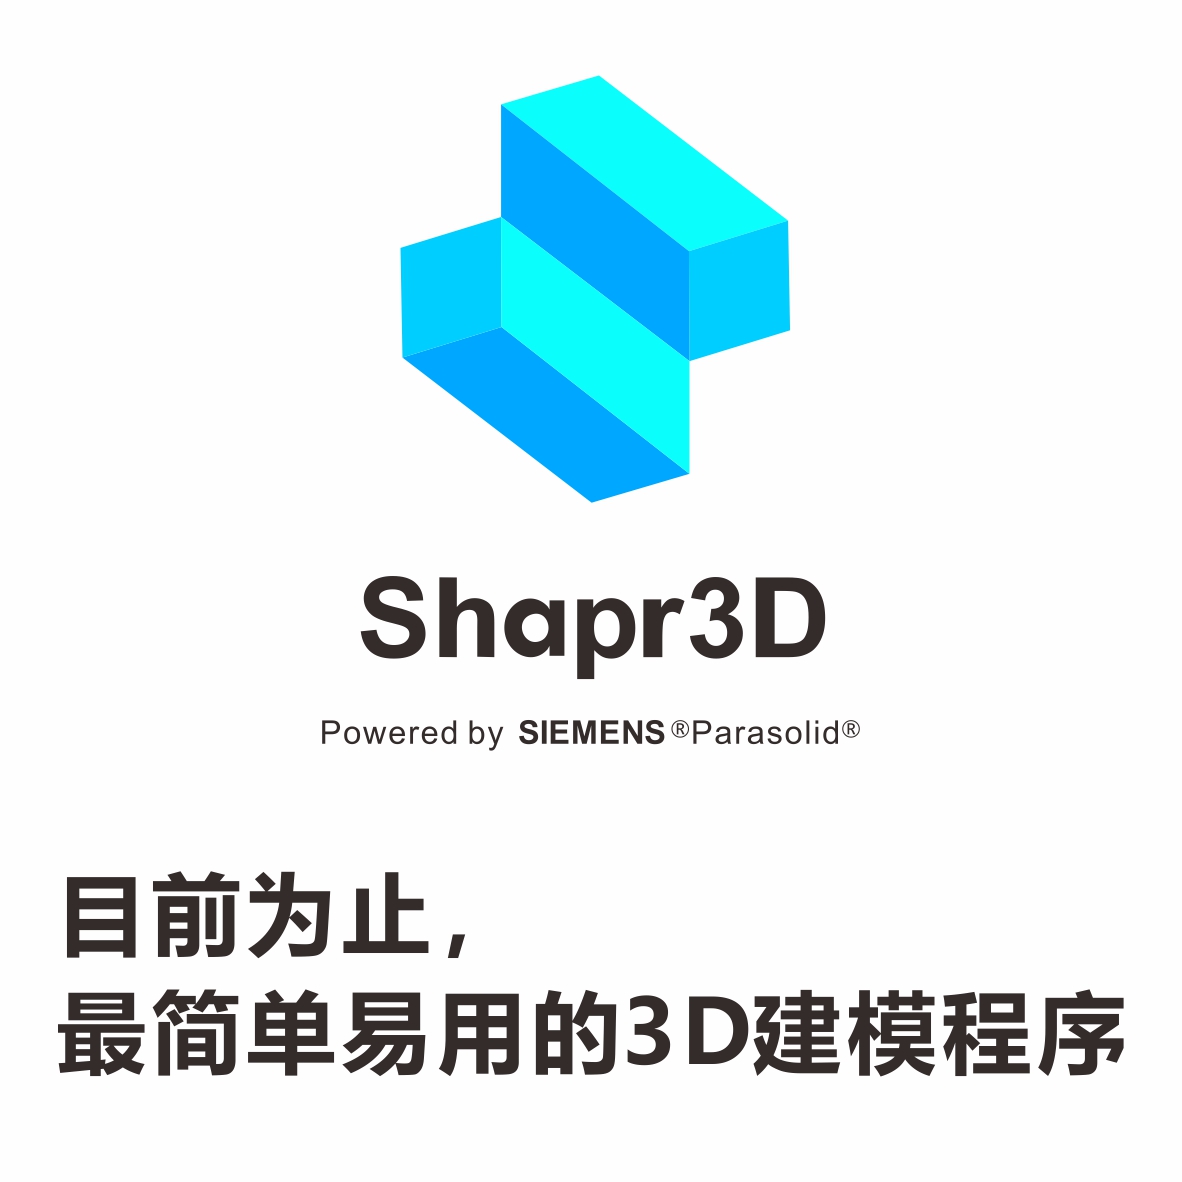 shapr3D软件教育认证账户